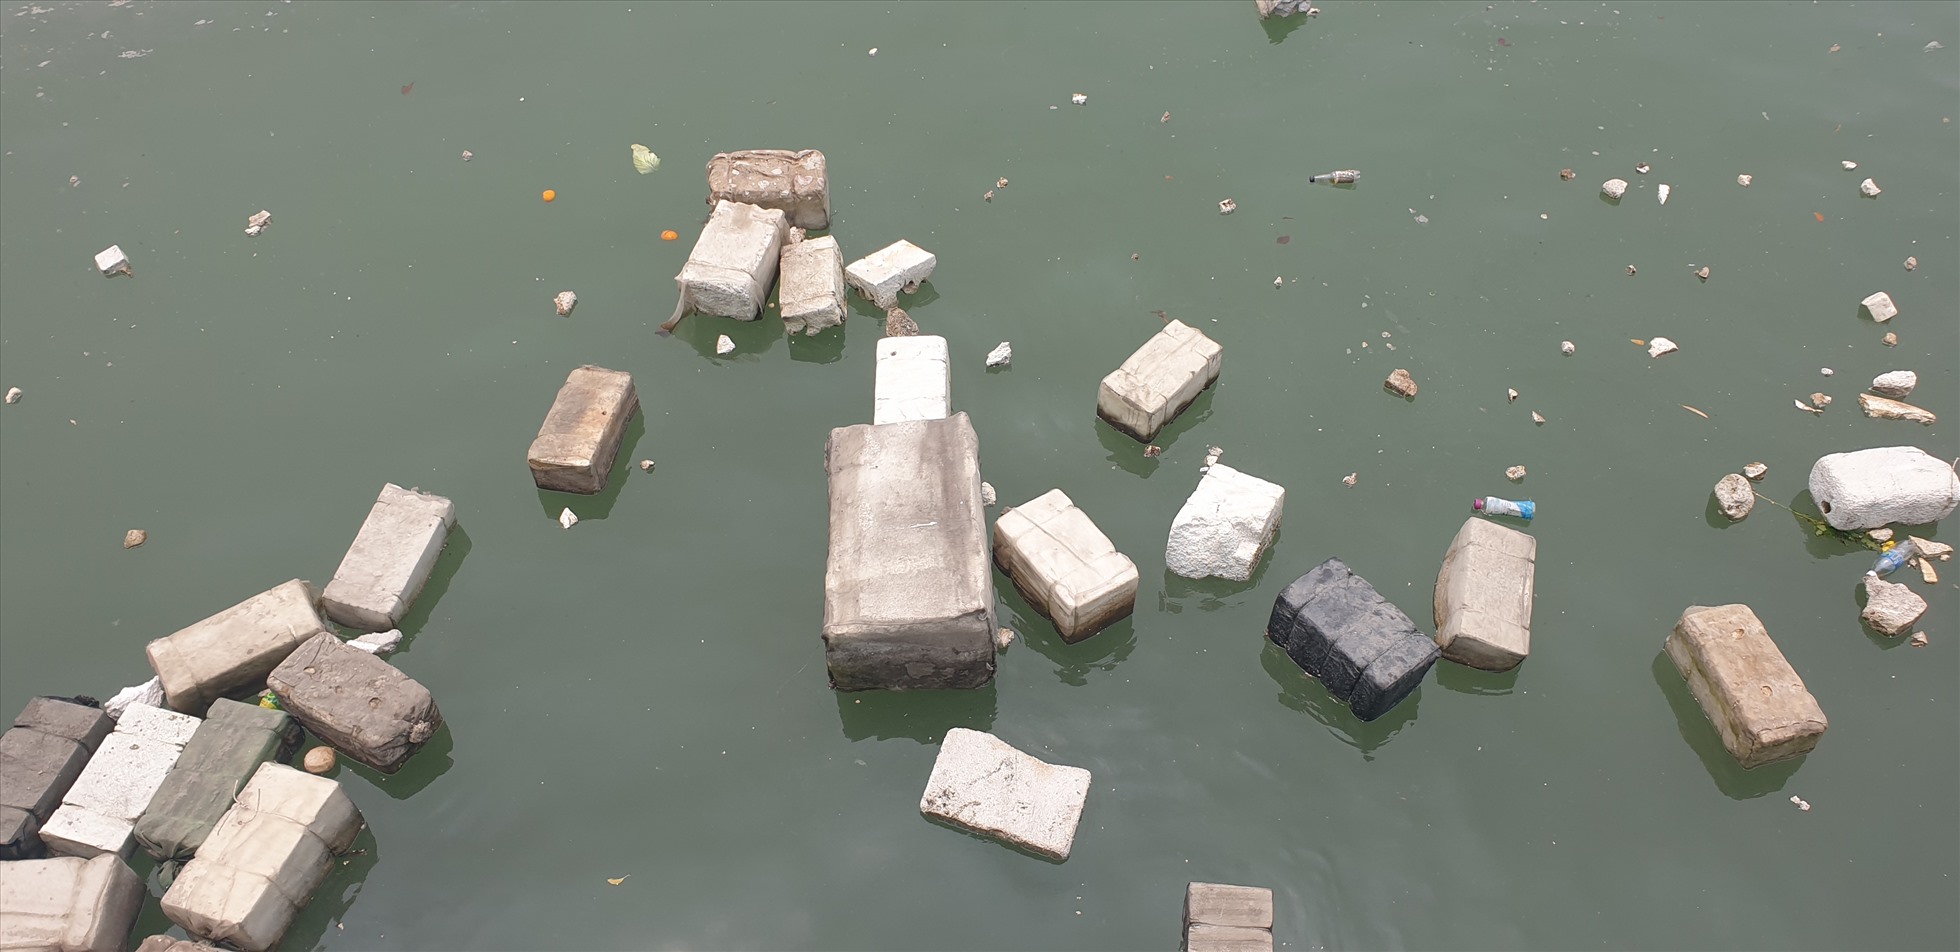 Sẽ phải mất rất nhiều thời gian mới có thể xử lý được lượng rác phao xốp khổng lồ trôi nổi trên vịnh Hạ Long. Ảnh: Nguyễn Hùng